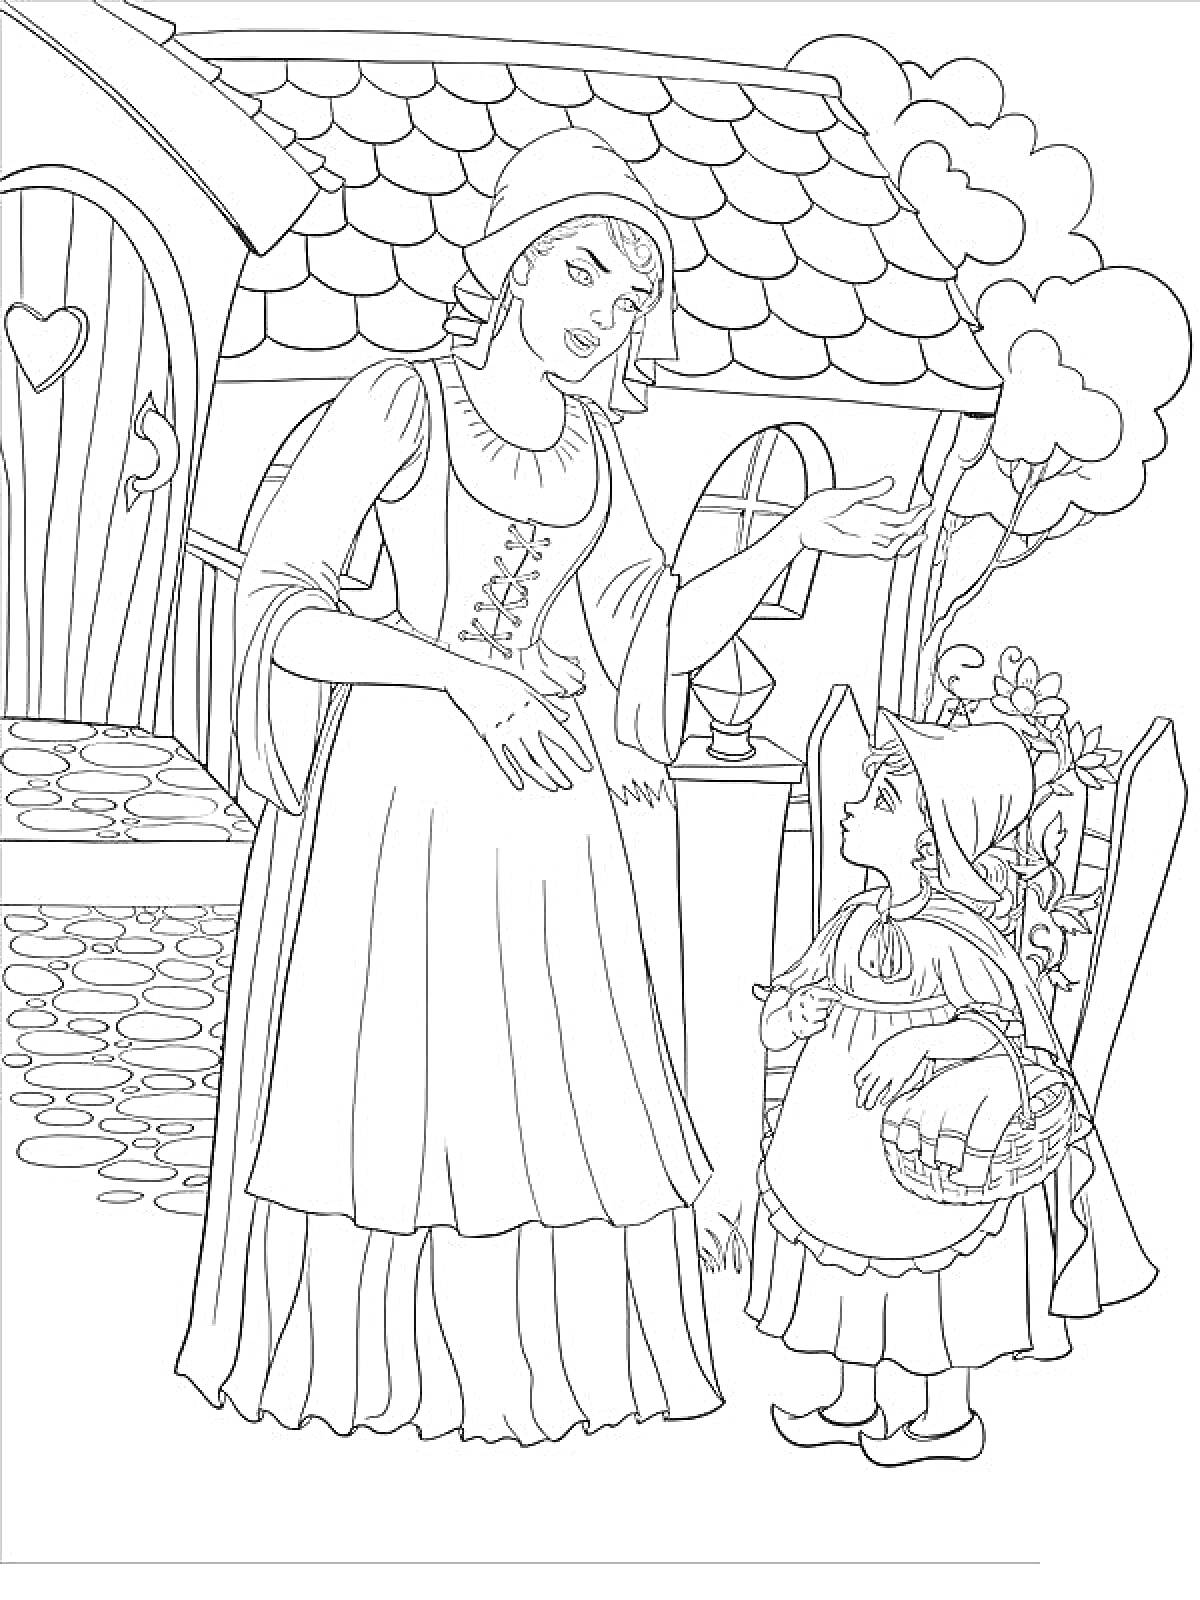 Раскраска Мать и дочь у дома с черепичной крышей, возле дверного проема с сердечком, на фоне дерева